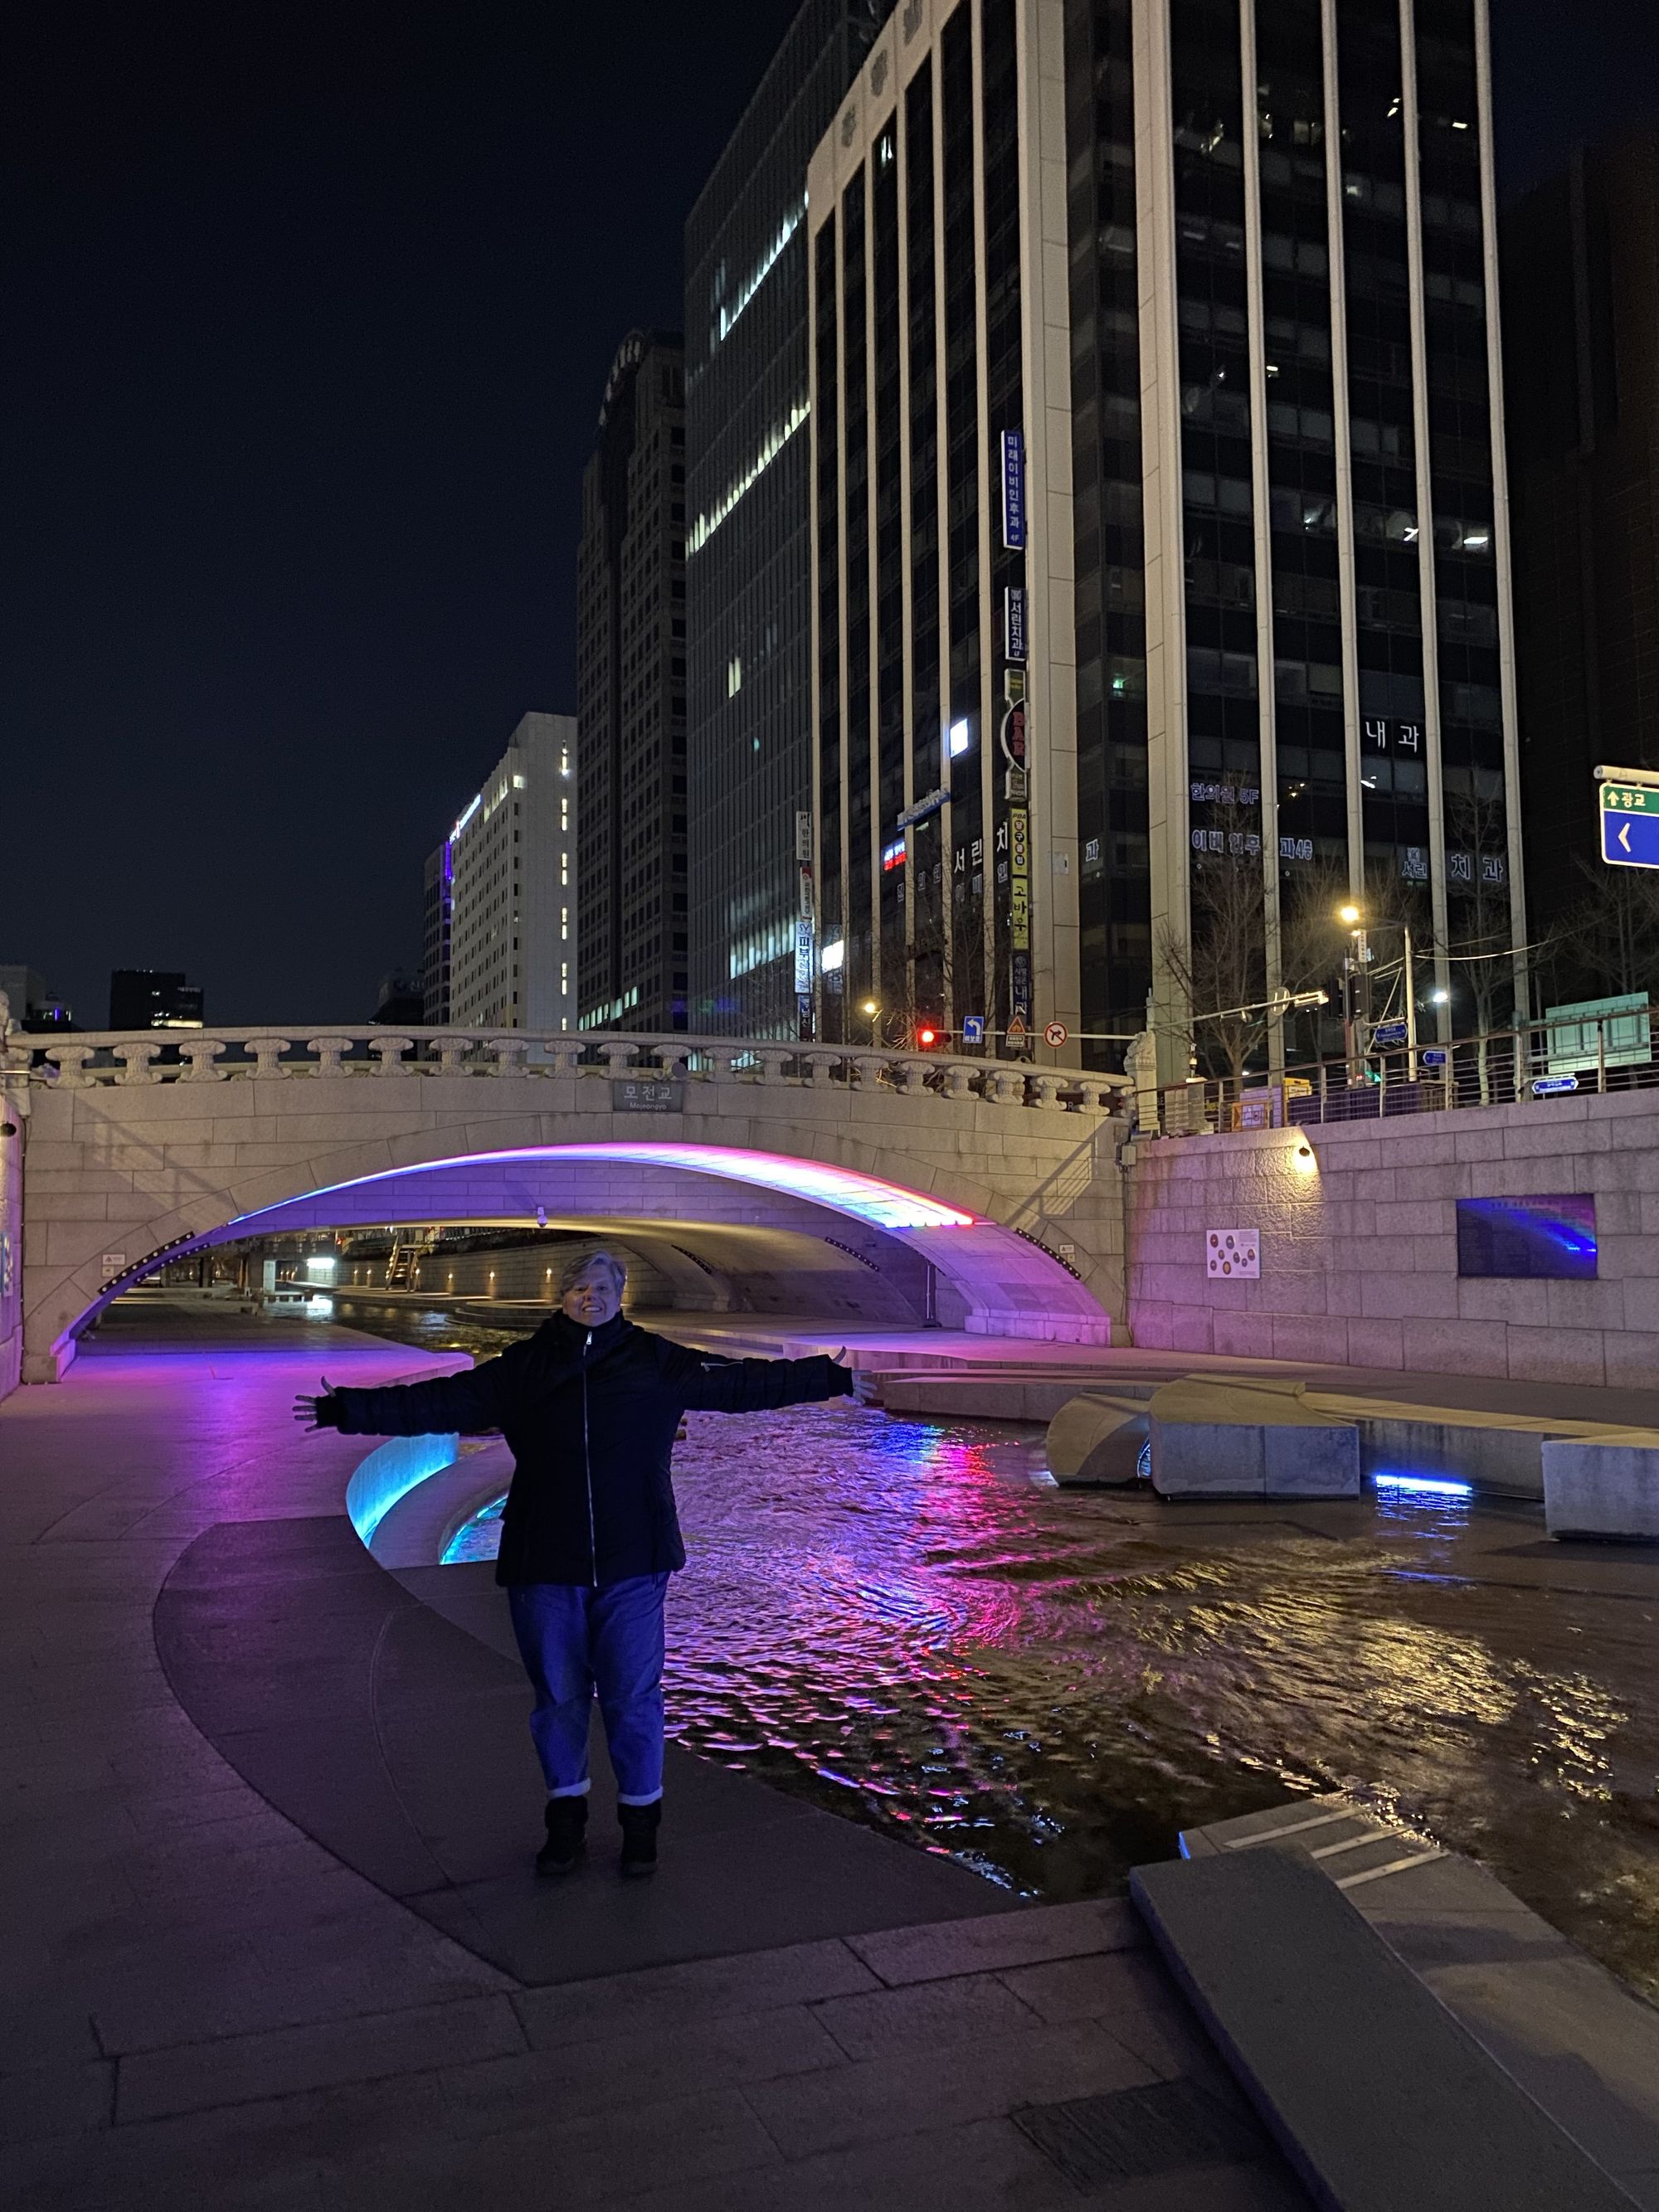 Os fantásticos projetos de regeneração urbana da Coreia